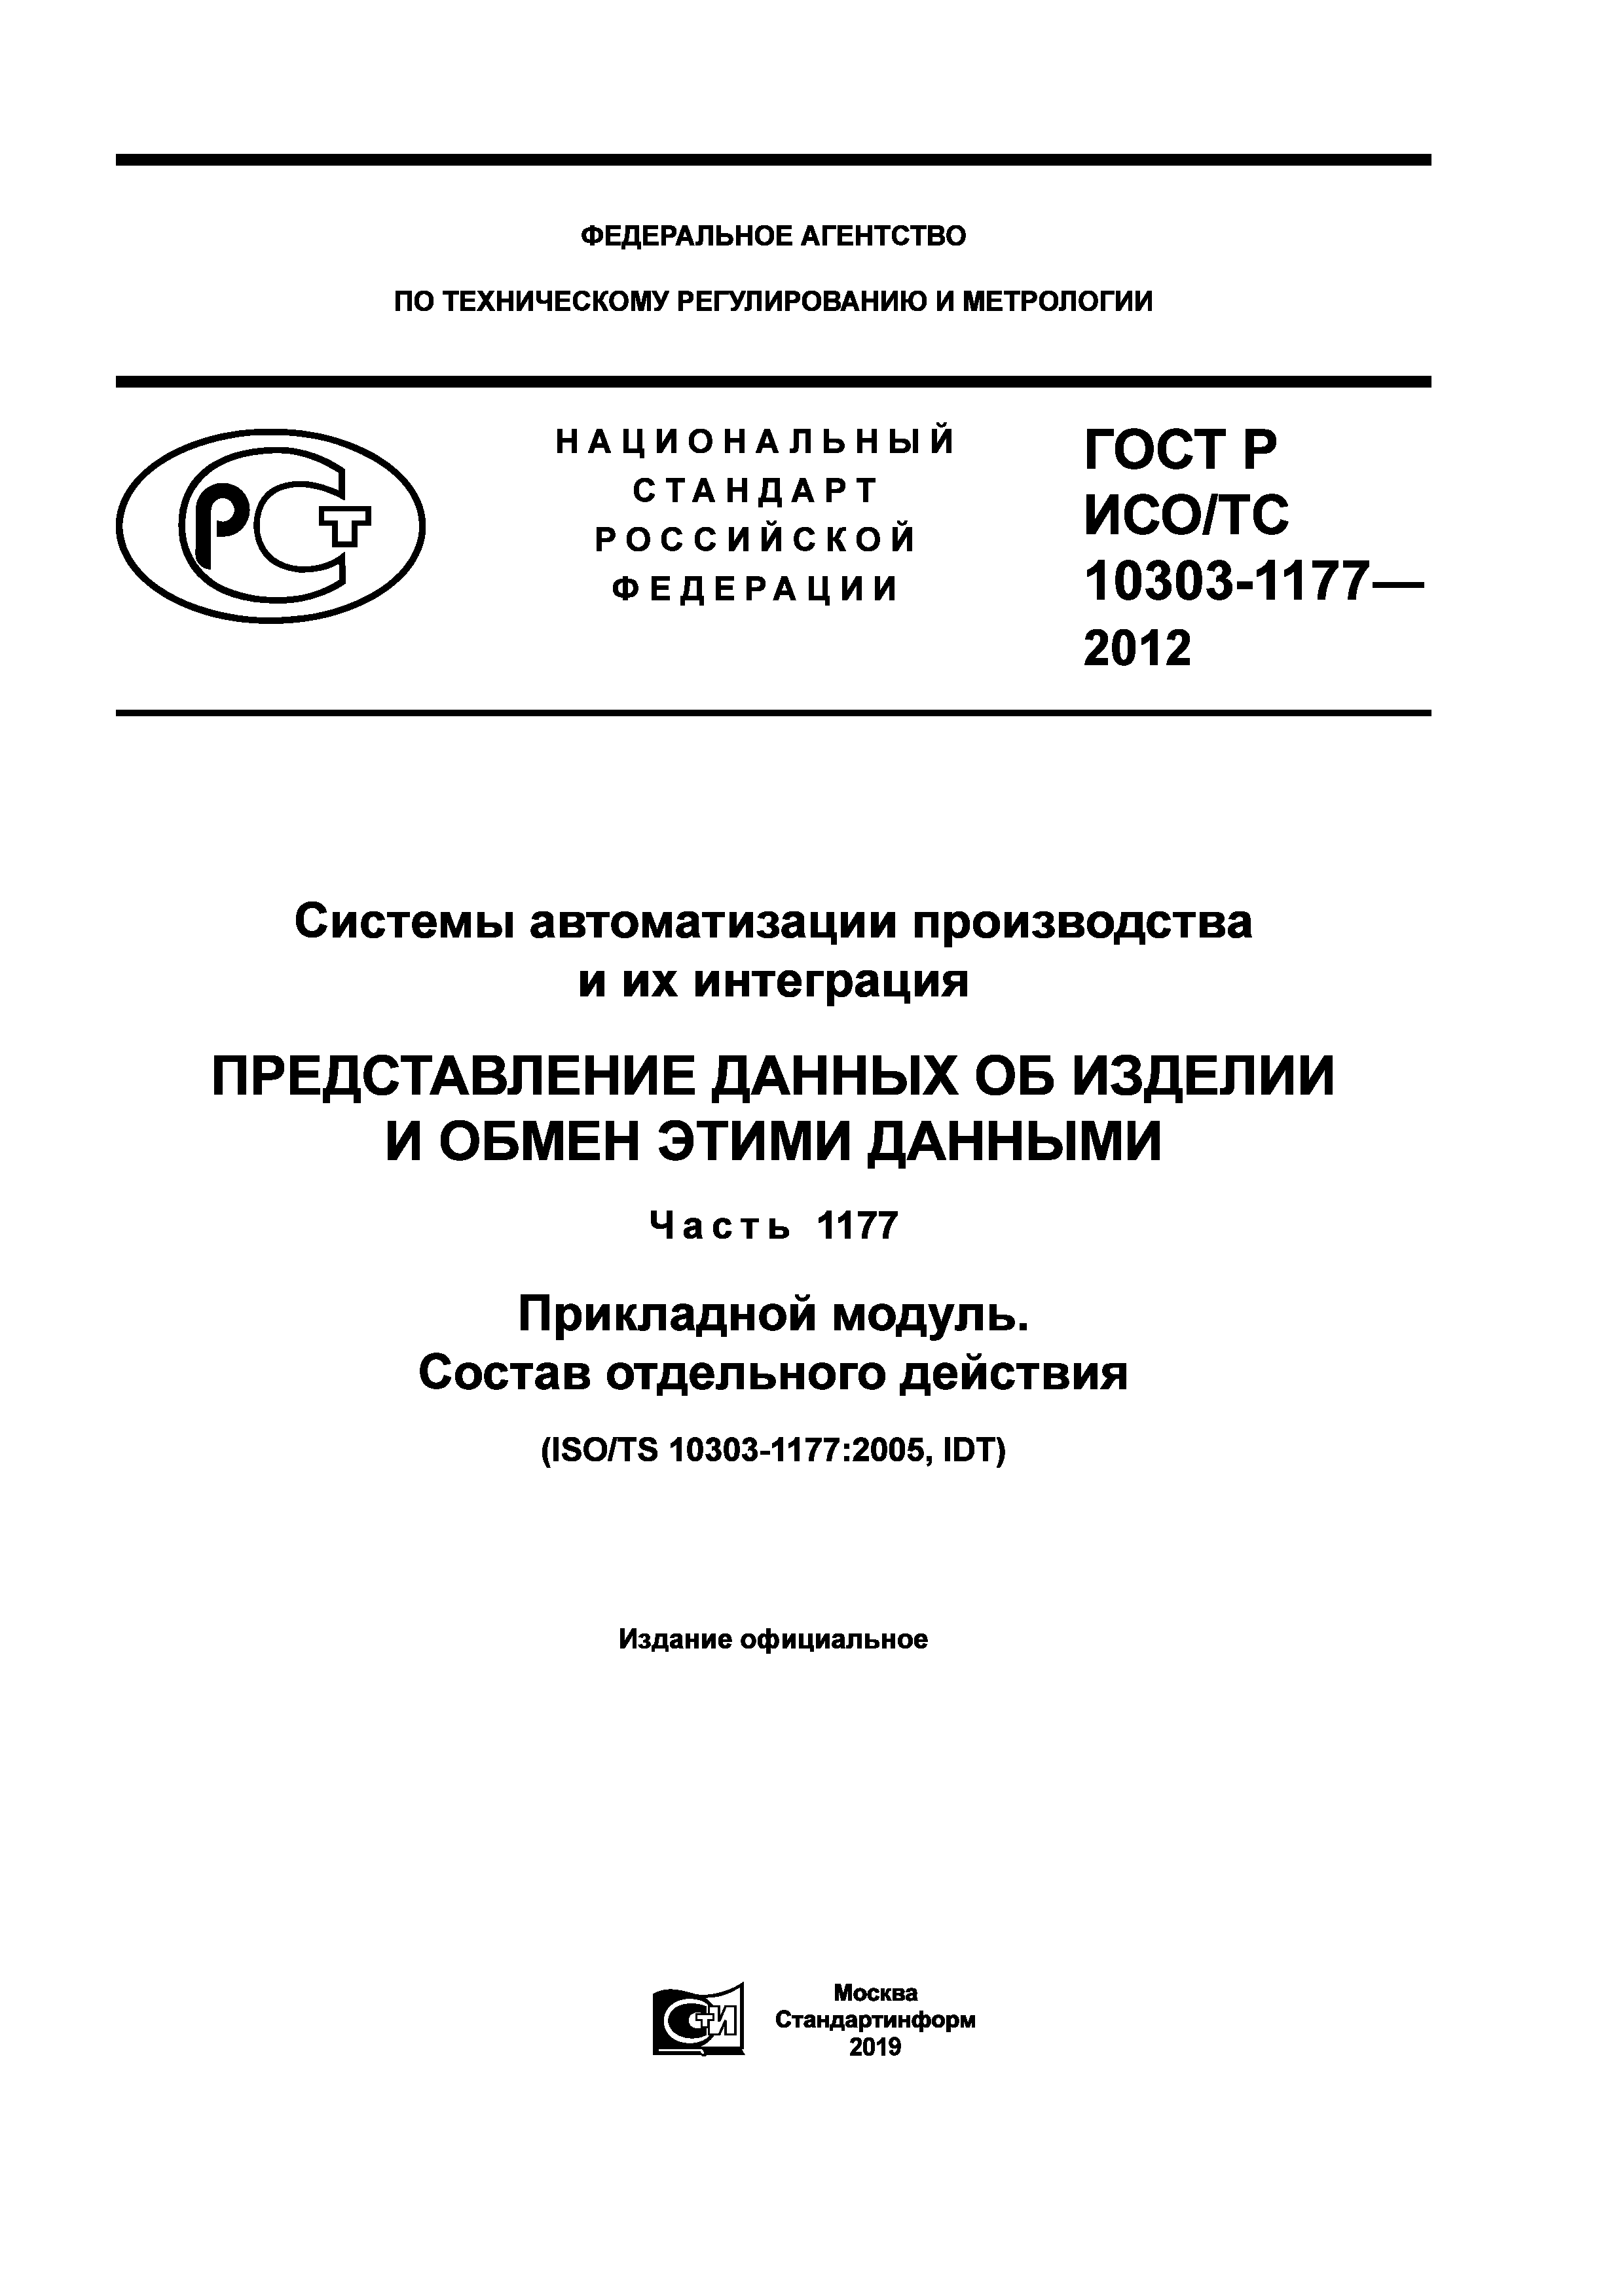 ГОСТ Р ИСО/ТС 10303-1177-2012